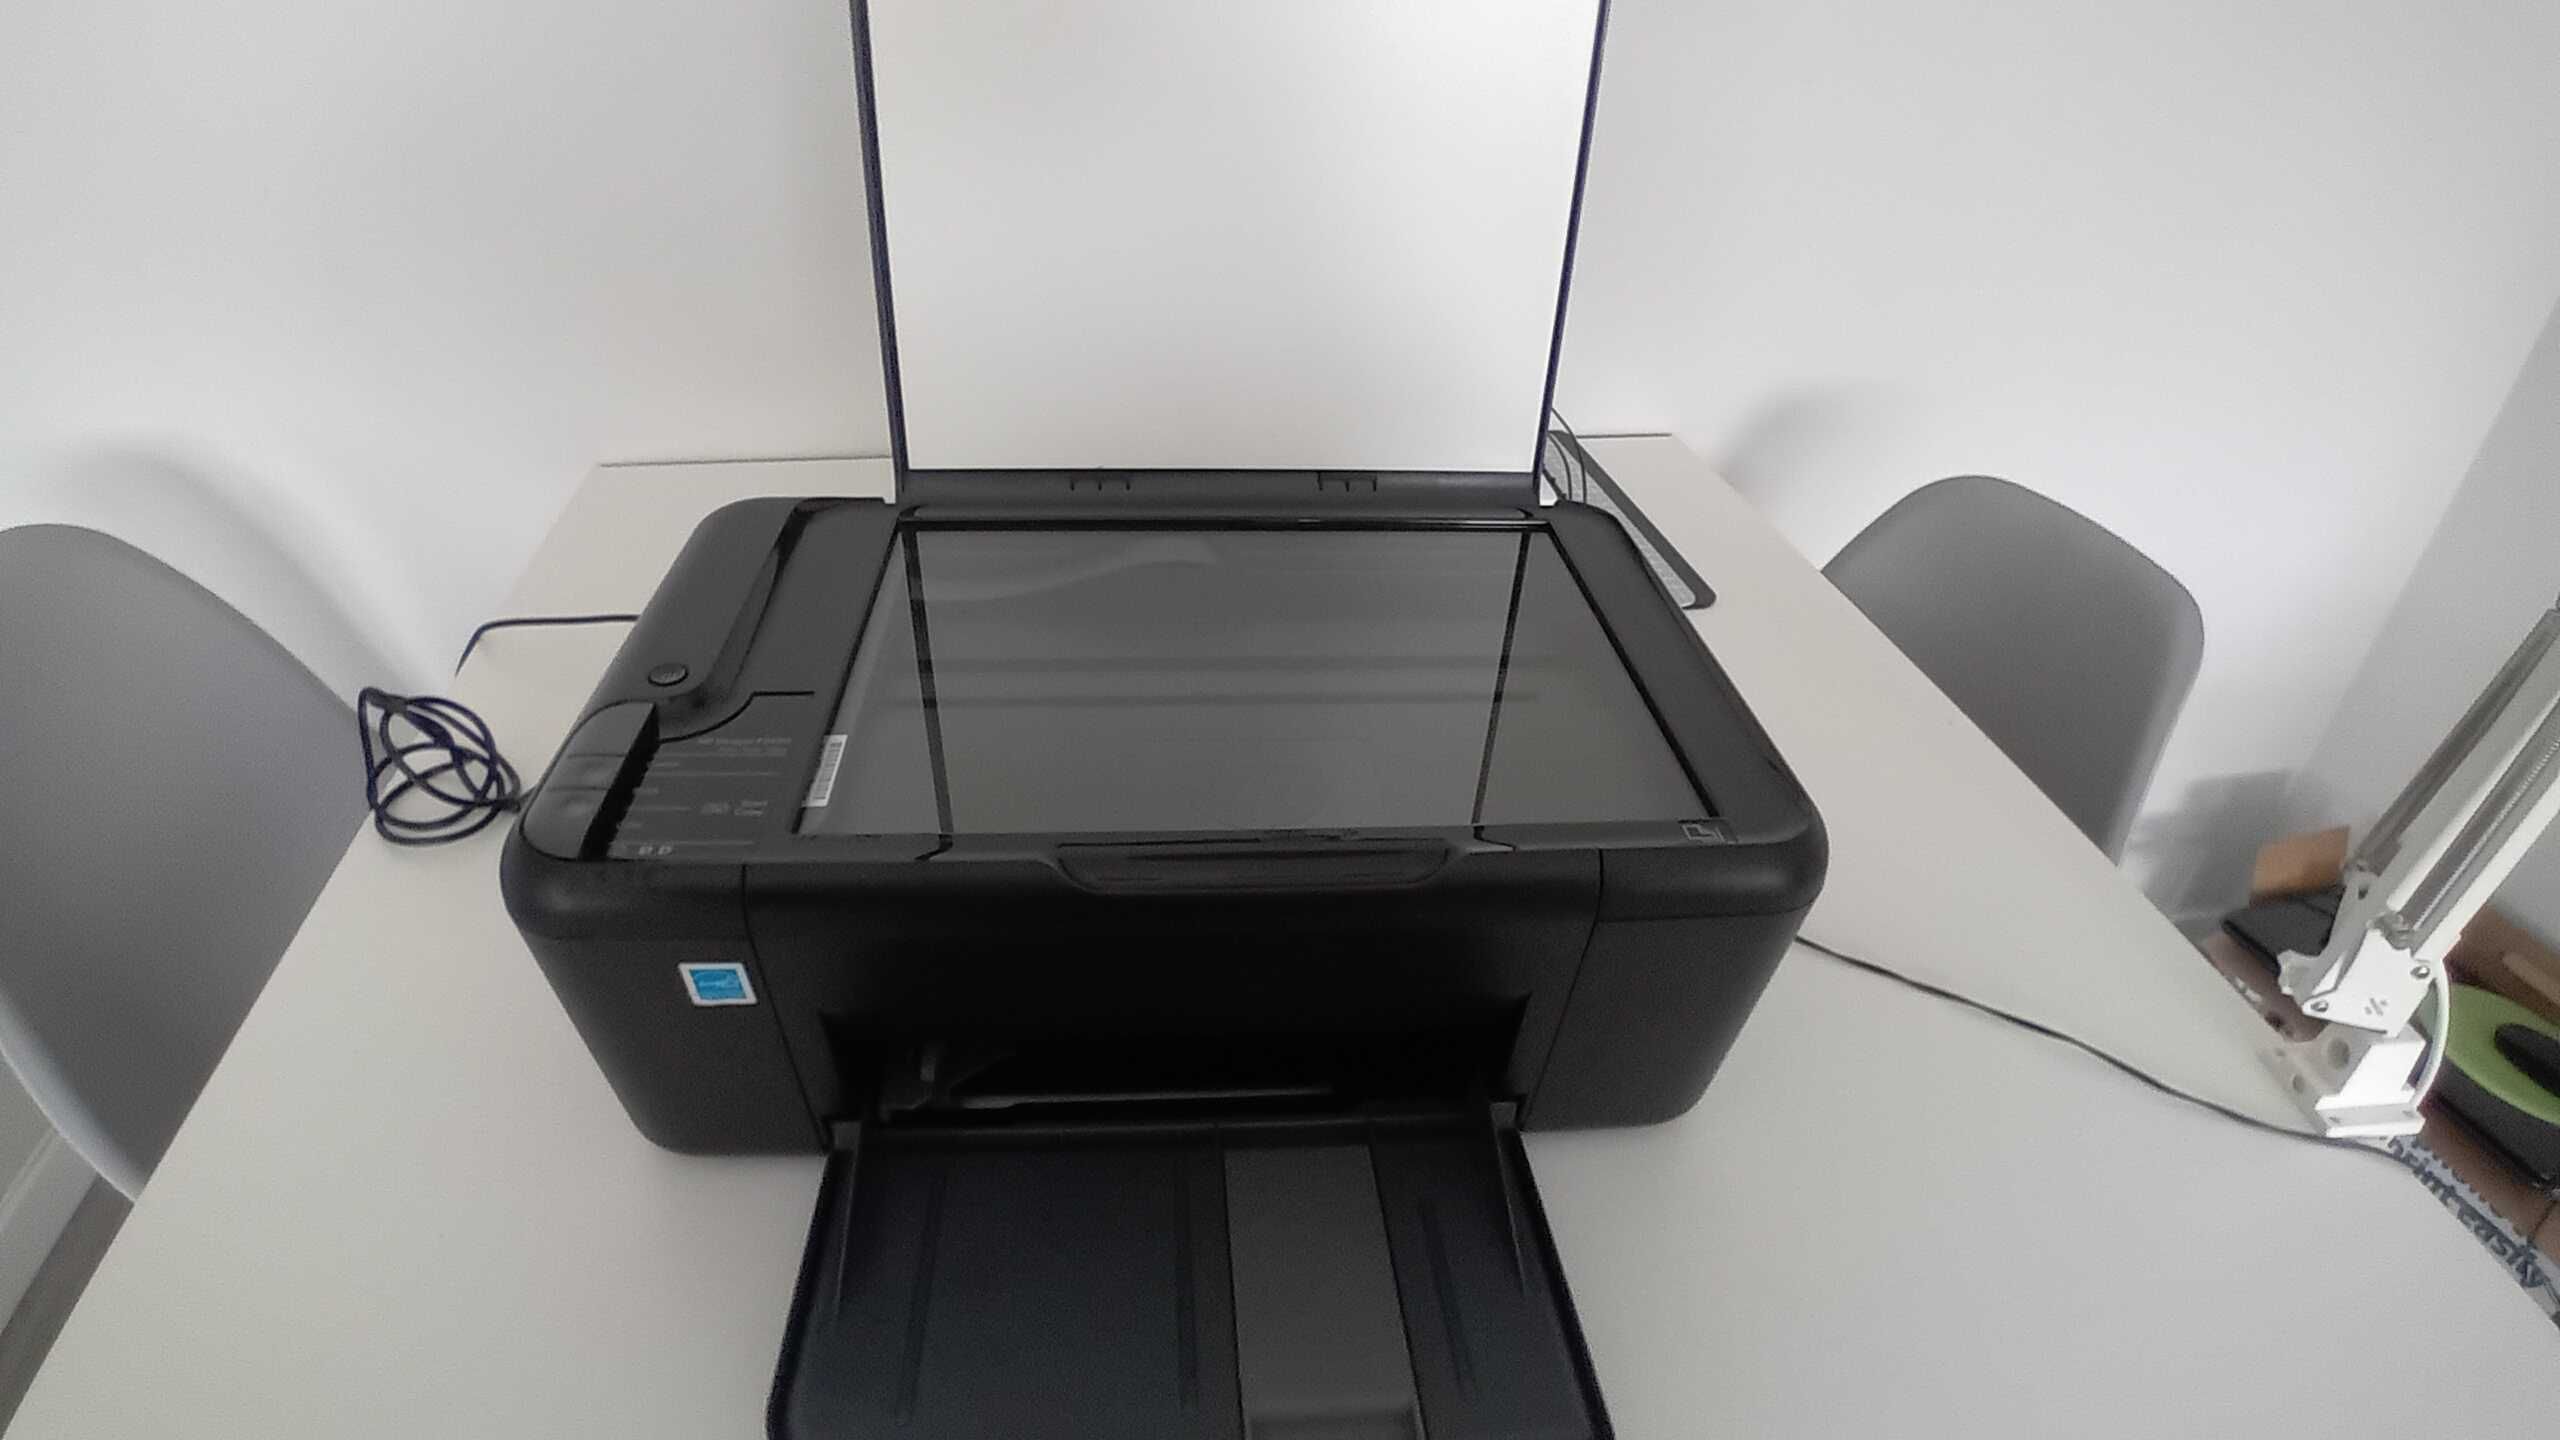 Impressora multifunções HP deskjet F2420